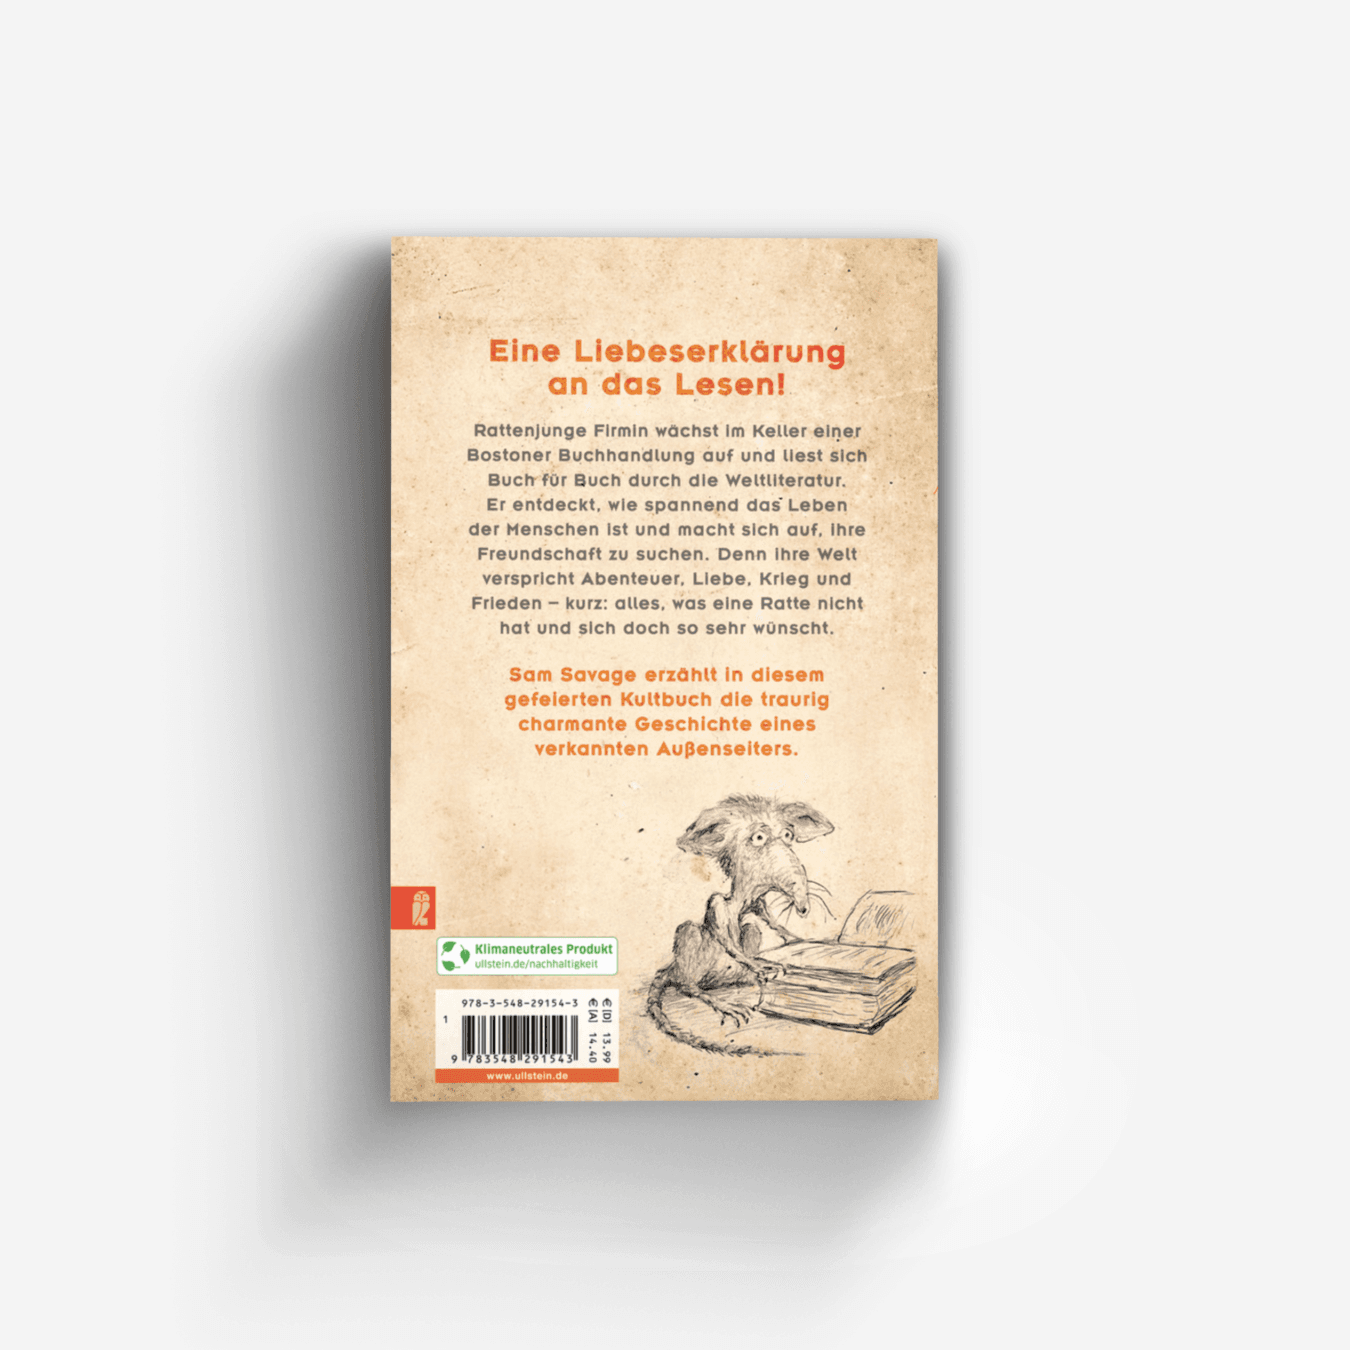 Buchcover von Firmin - Ein Rattenleben